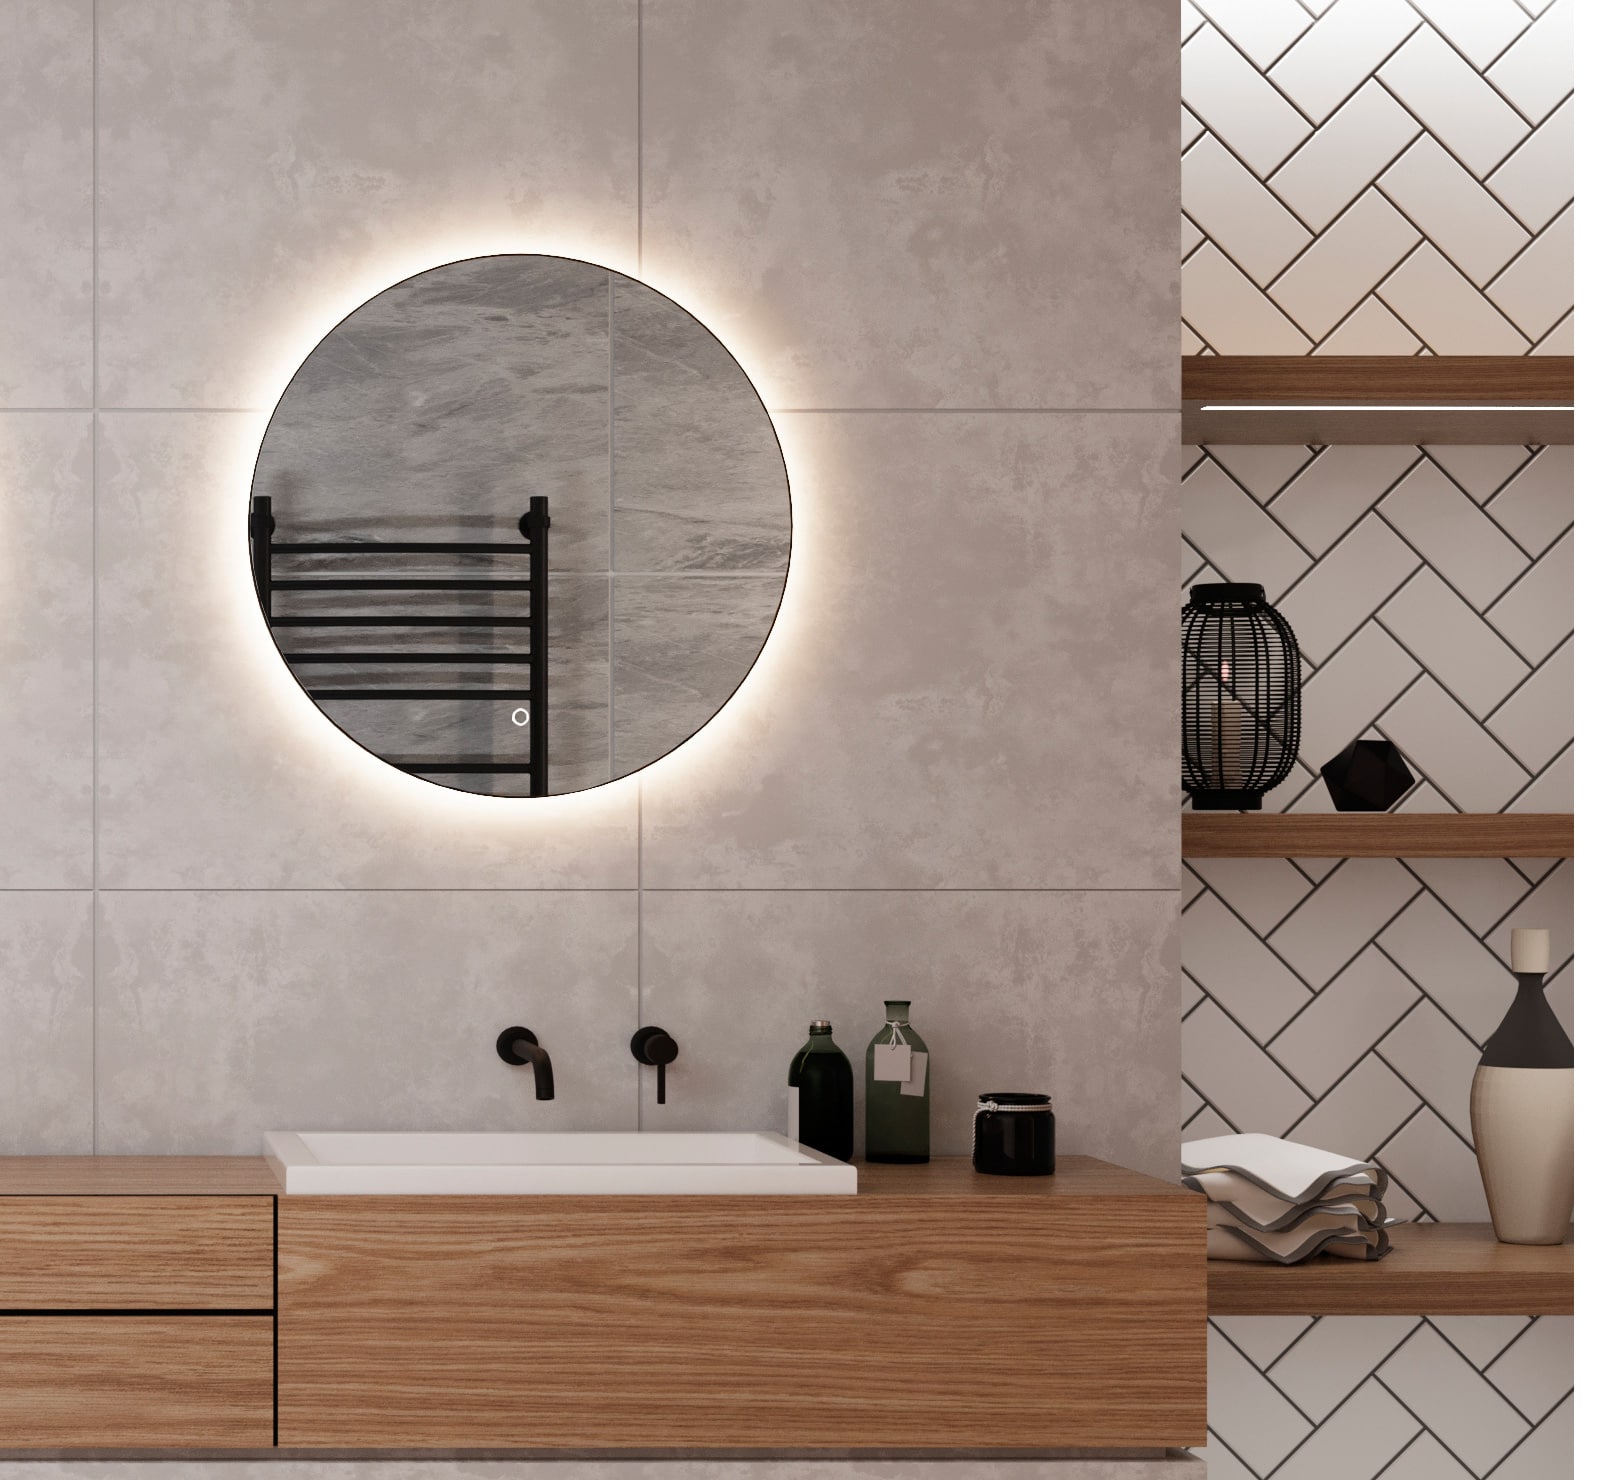 Ronde badkamerspiegel met verlichting, verwarming, touch sensor, dimfunctie en mat zwart frame 60x60 cm - Designspiegels